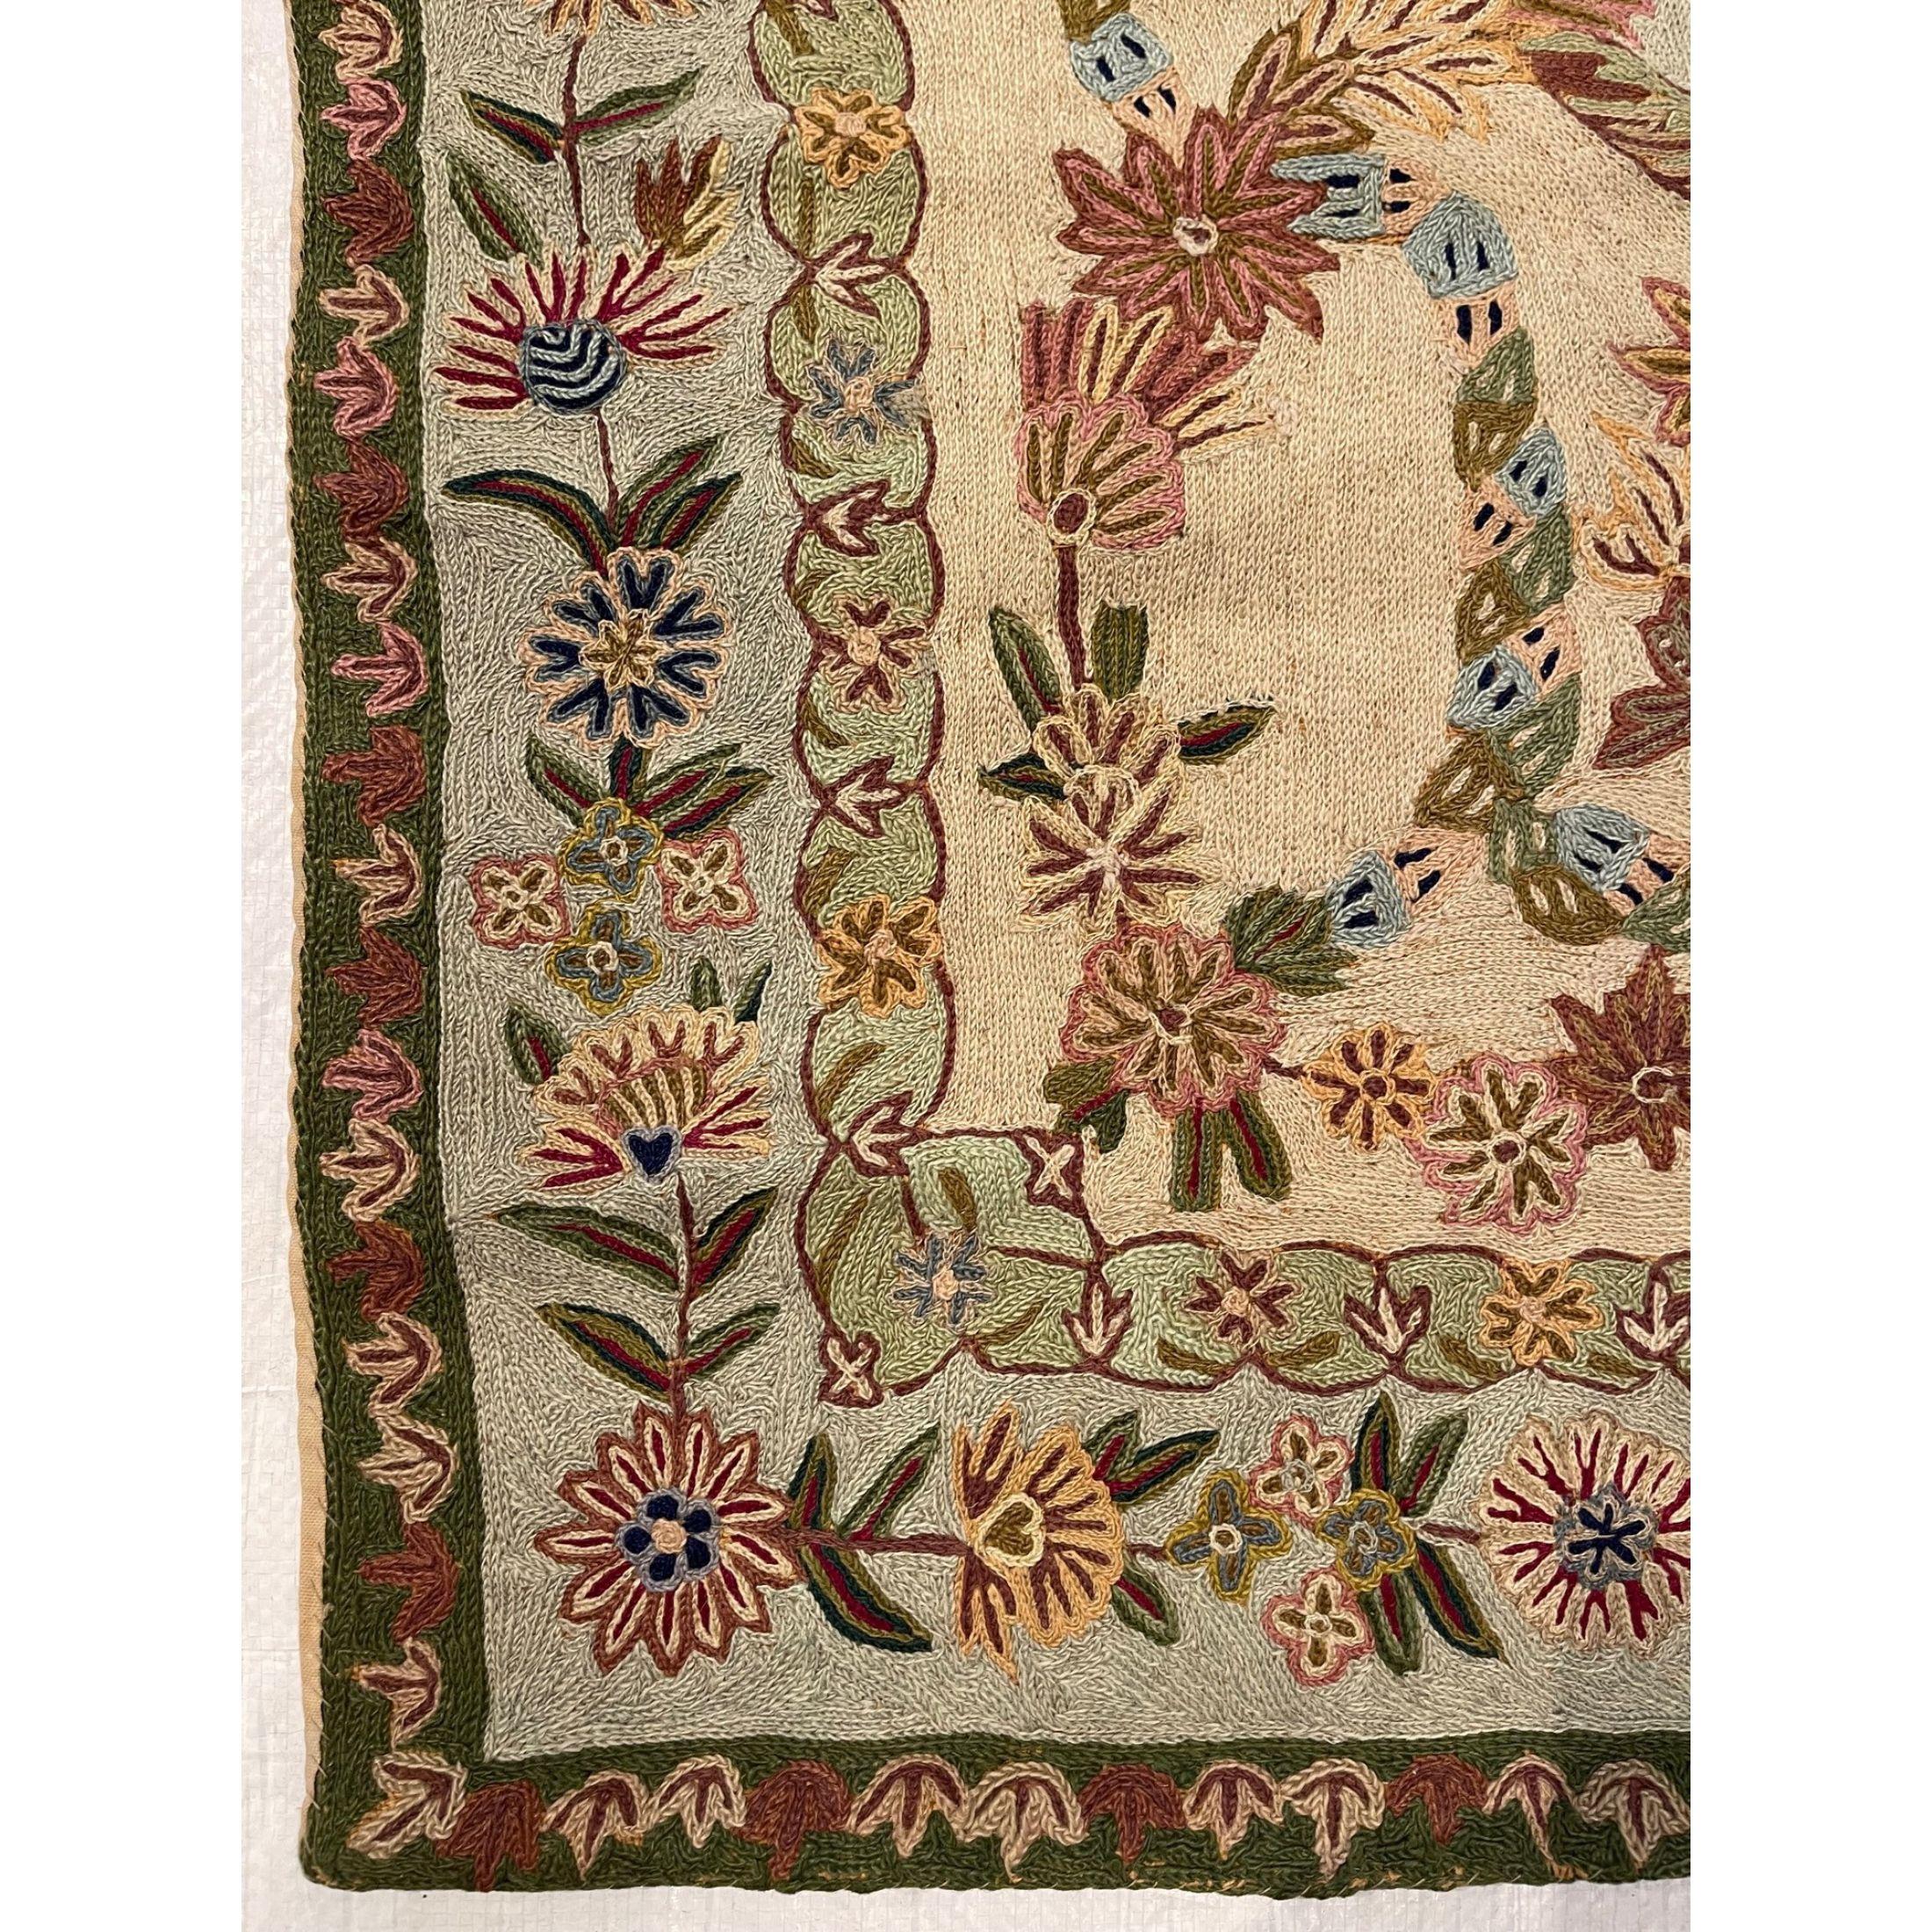 Other Antique Needlework Floral Design For Sale